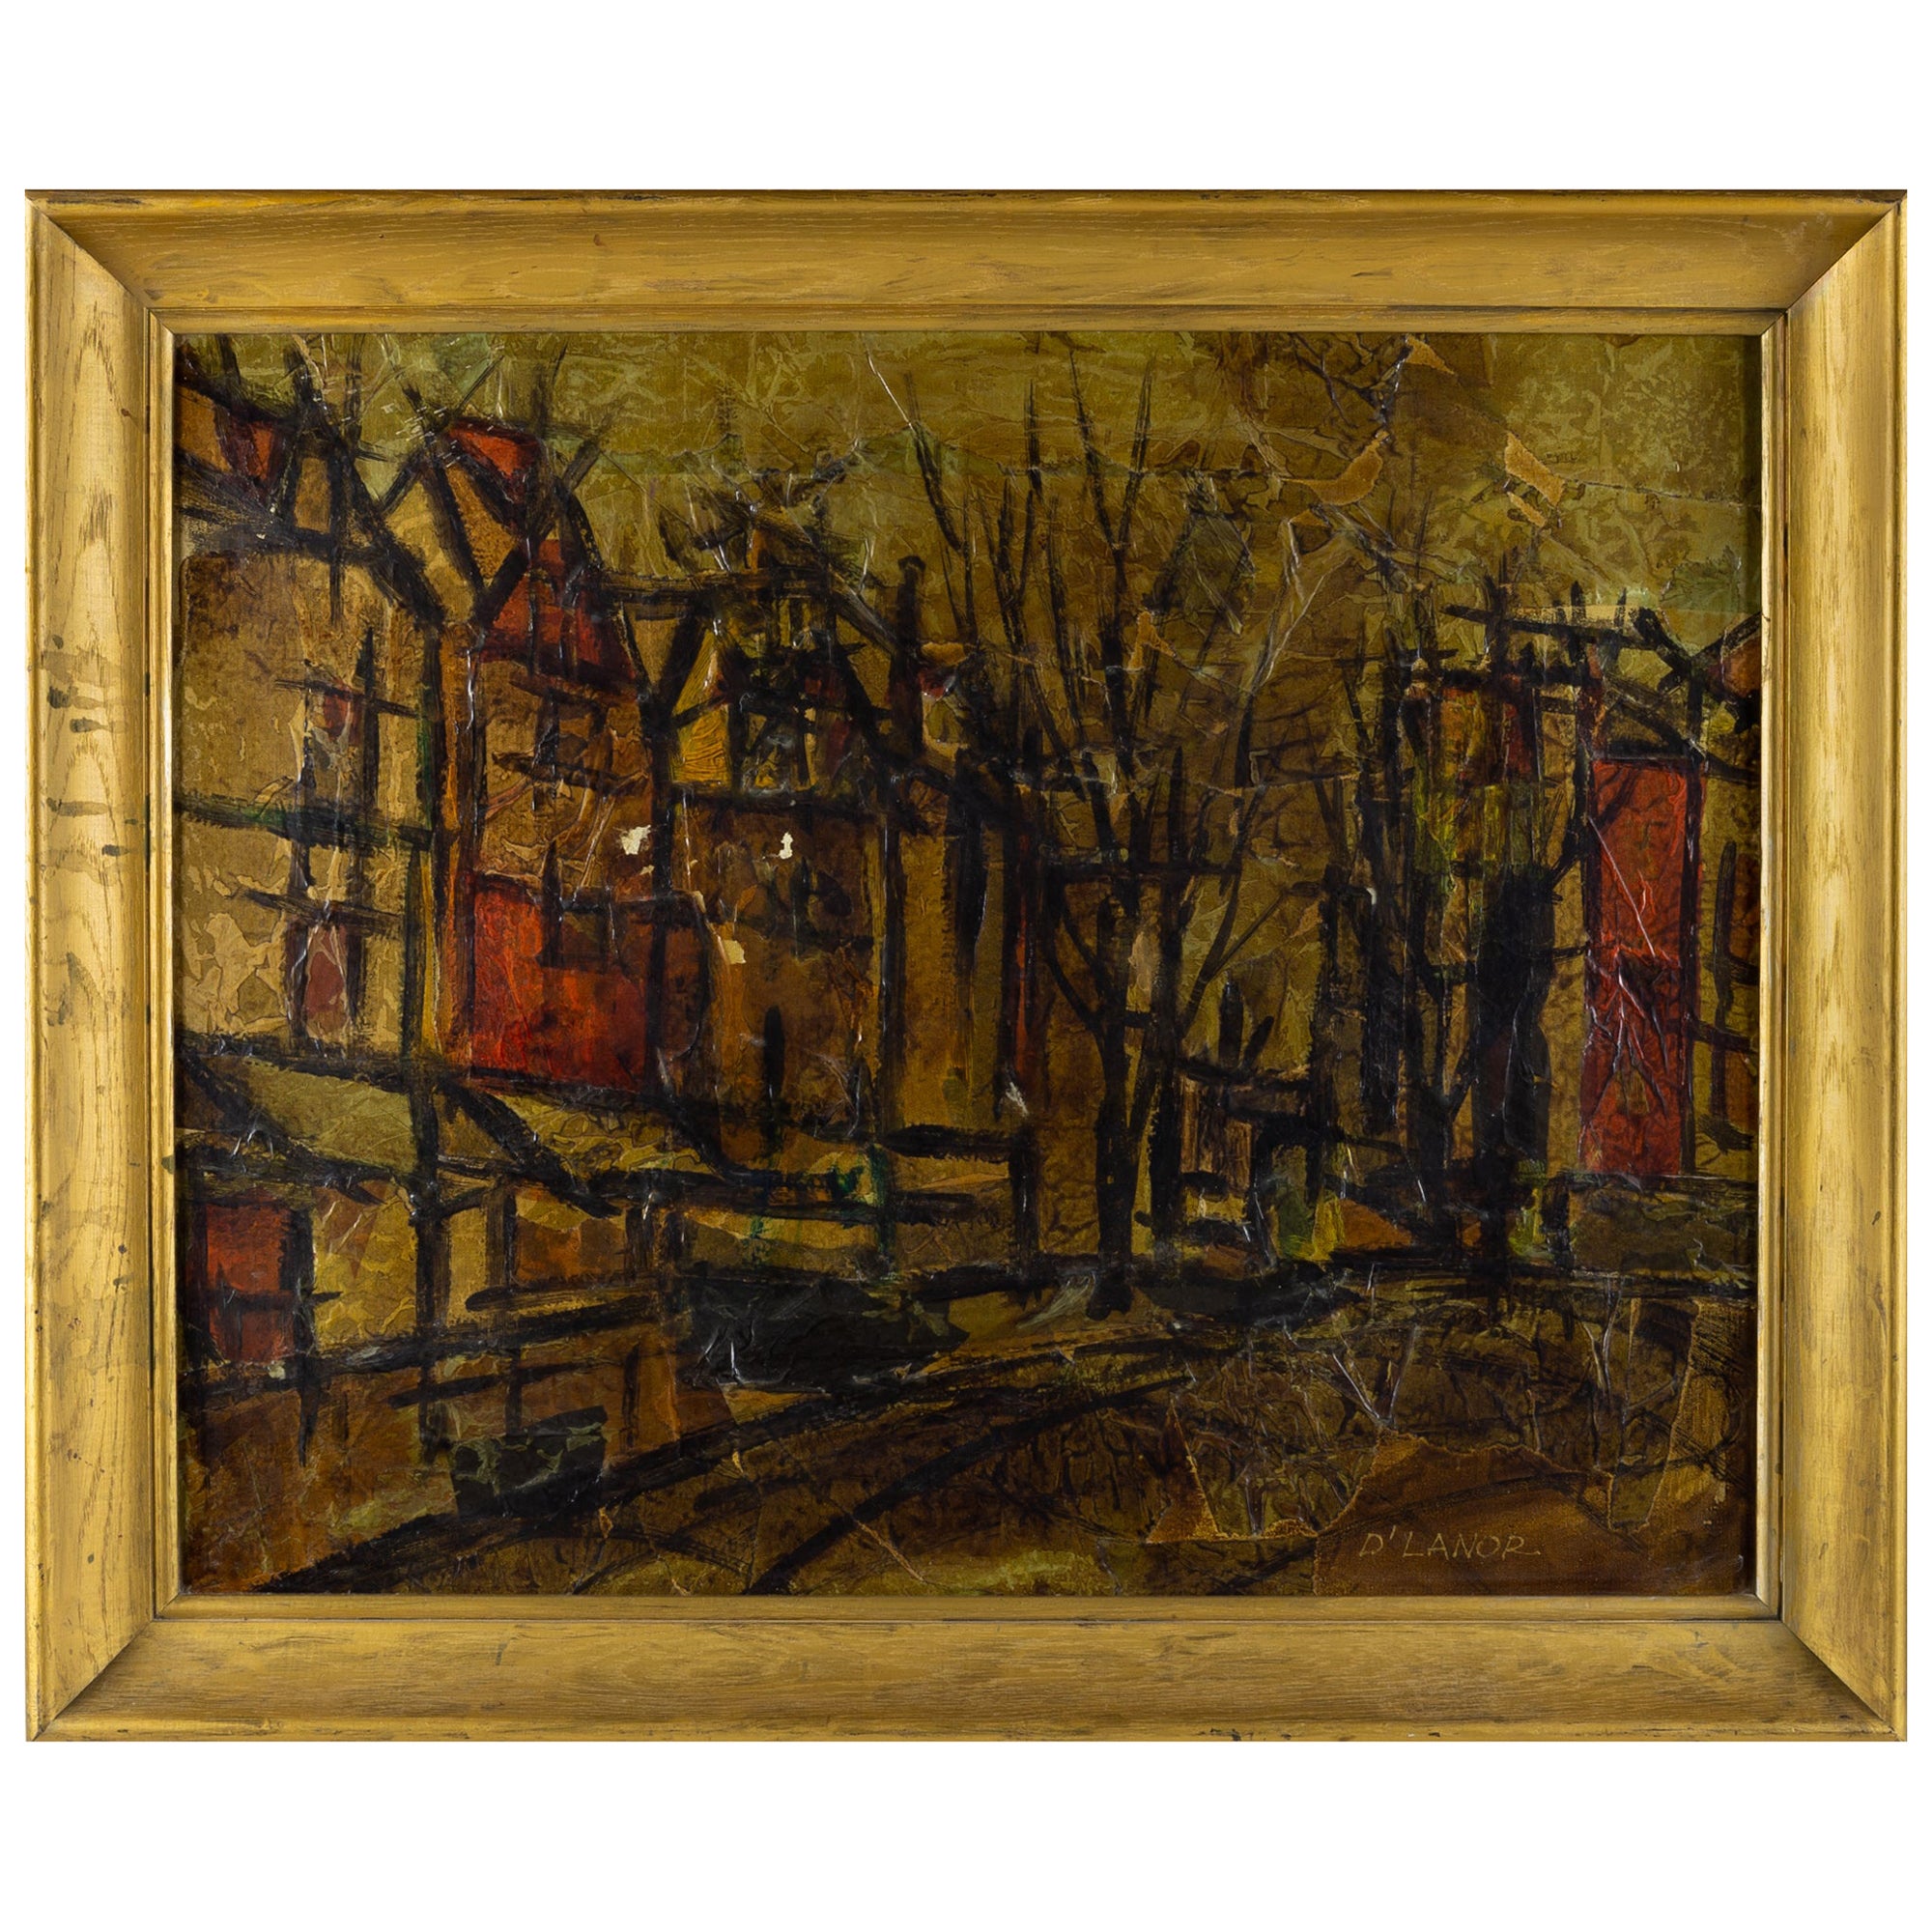 D'Lanor - Peinture à l'huile sur toile - paysage urbain abstrait du milieu du siècle dernier